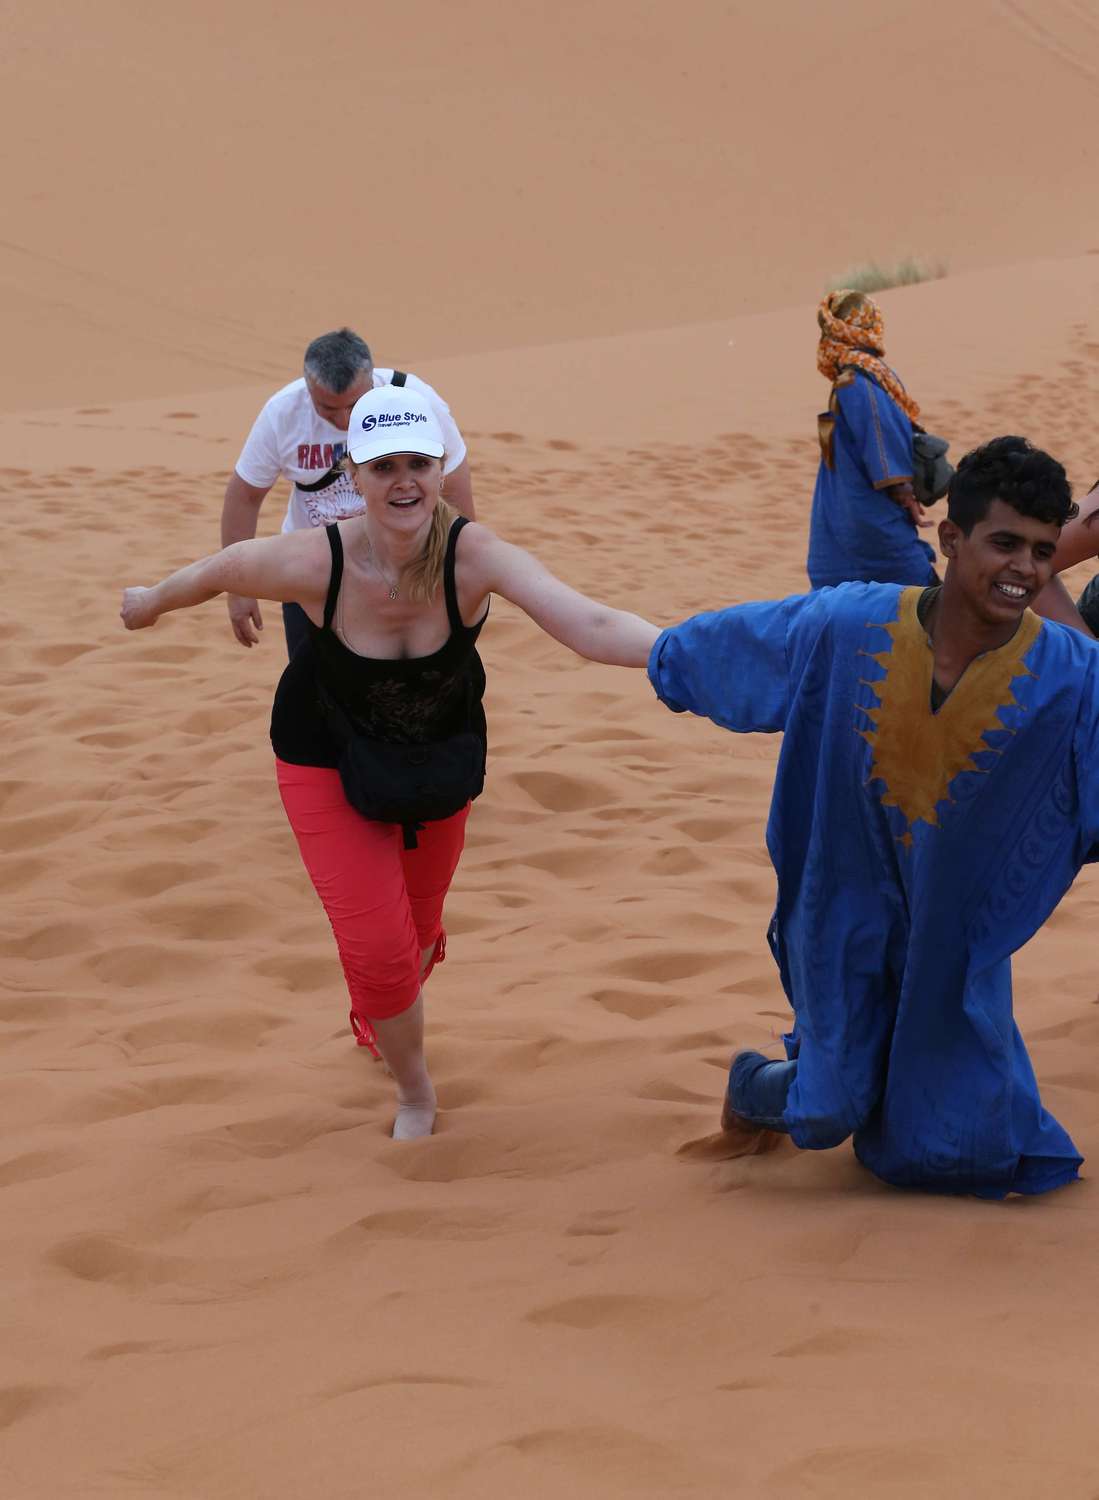 ... a když se člověk nemůže vydrápat na duny, pomůže s radostí každý Maročan!